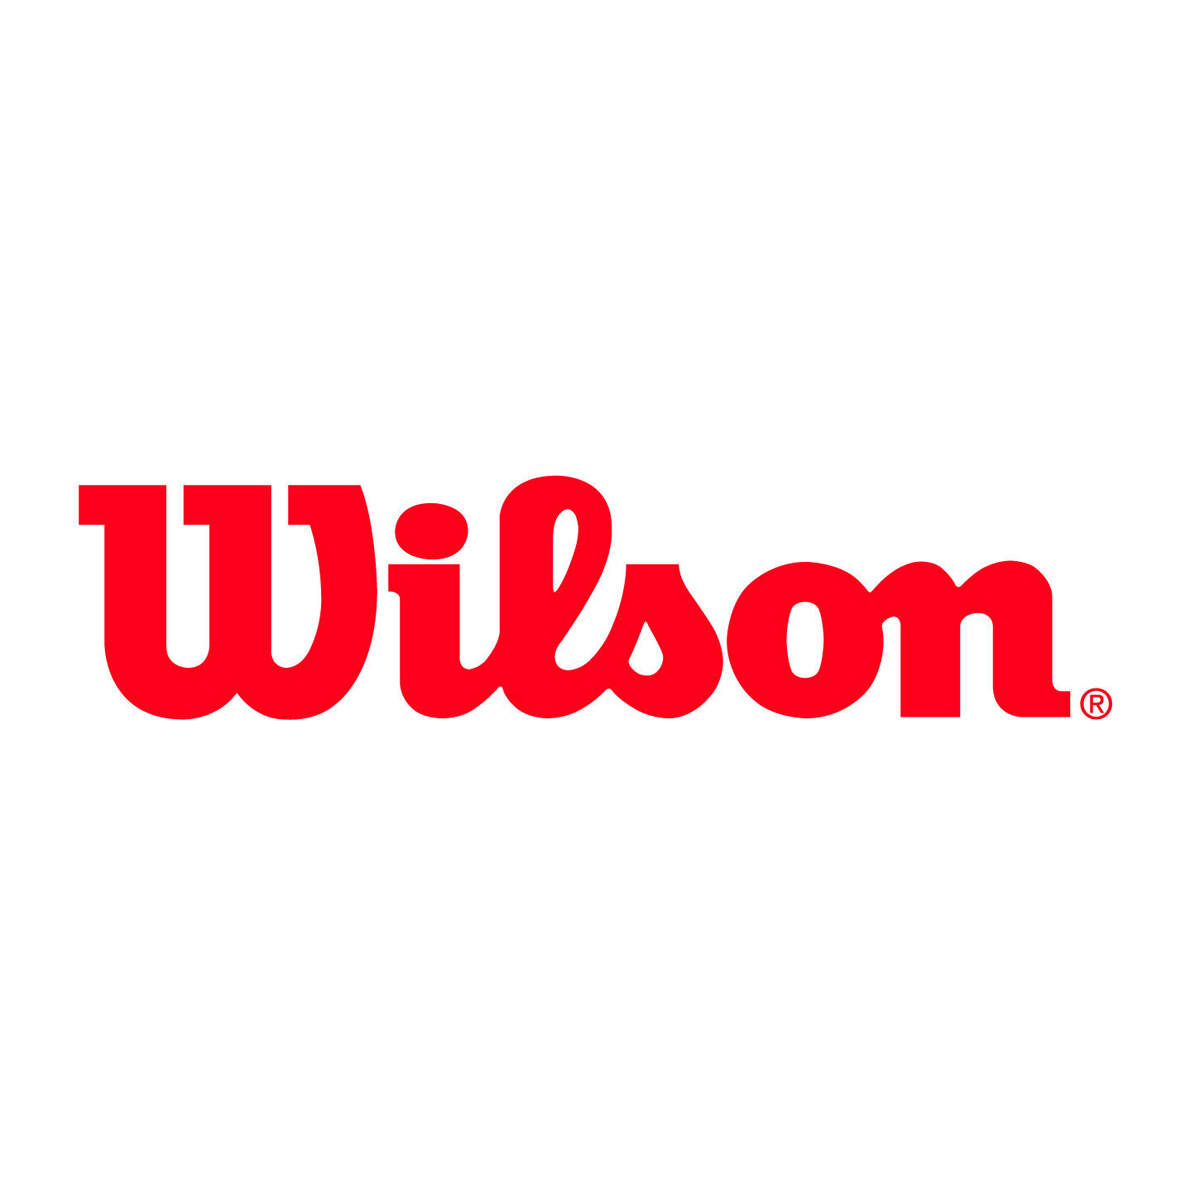 Wilson_Logo.jpg